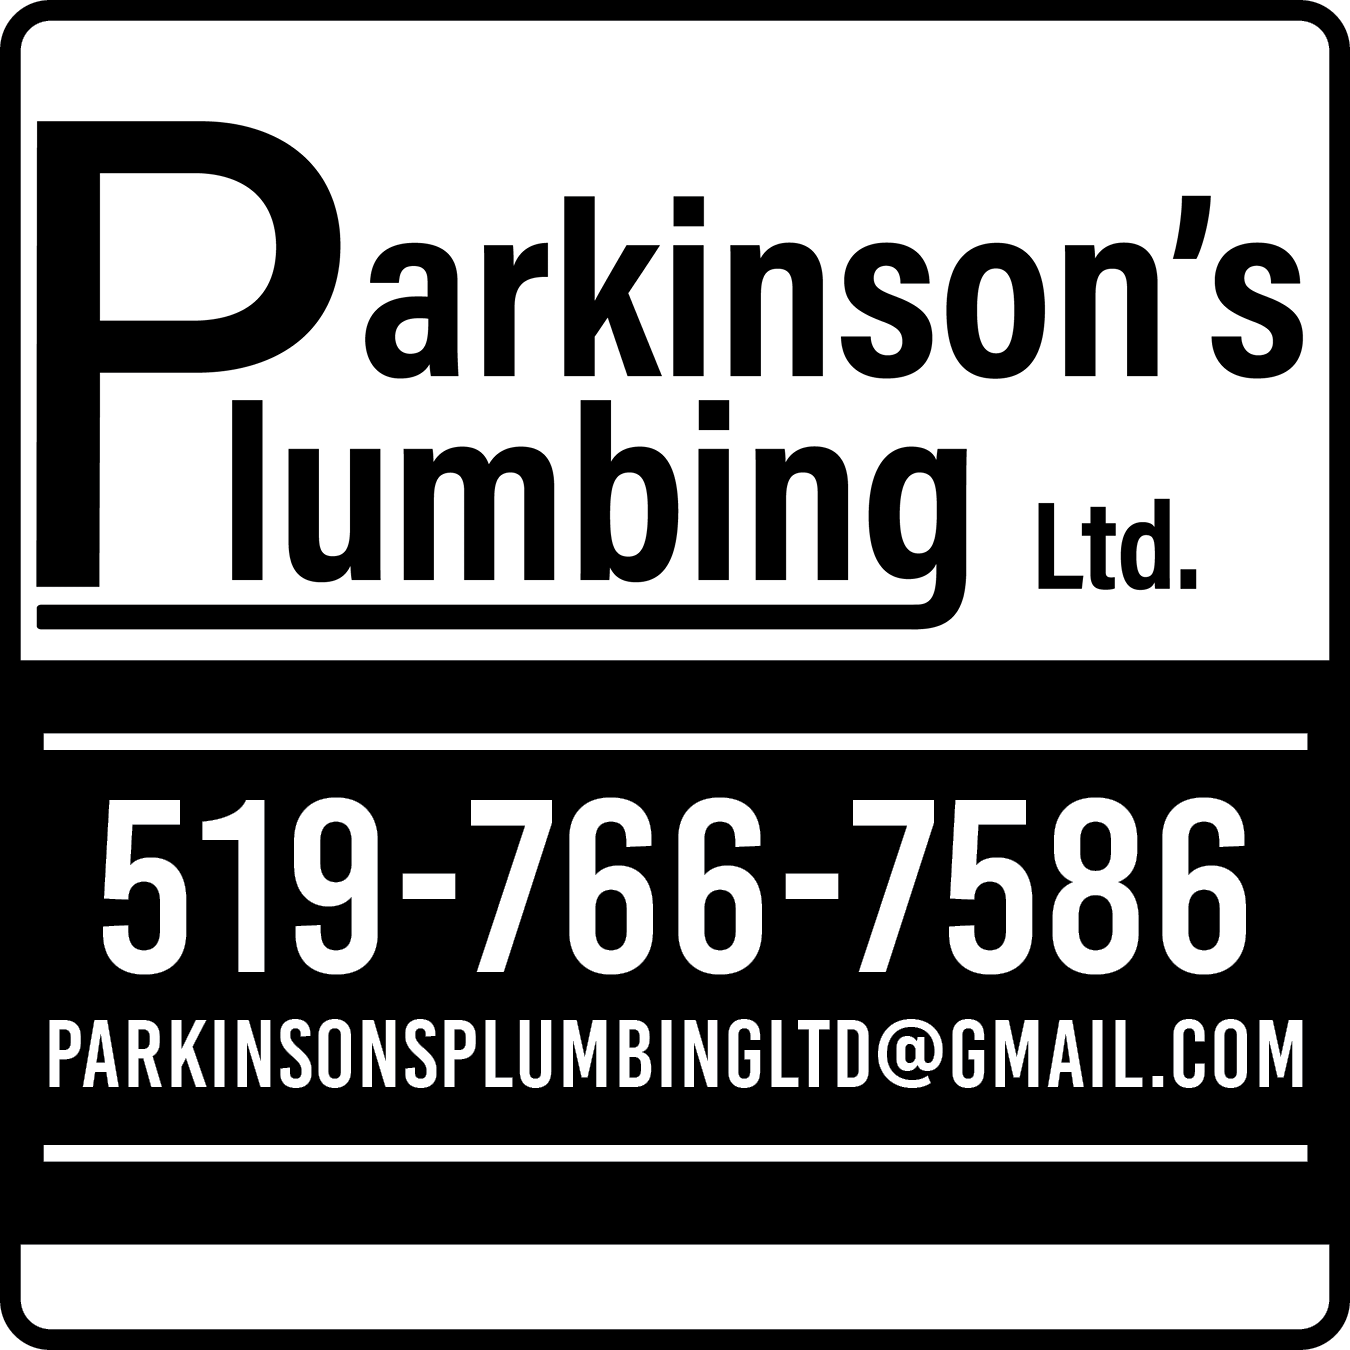 Parkinson's Plumbing Ltd.